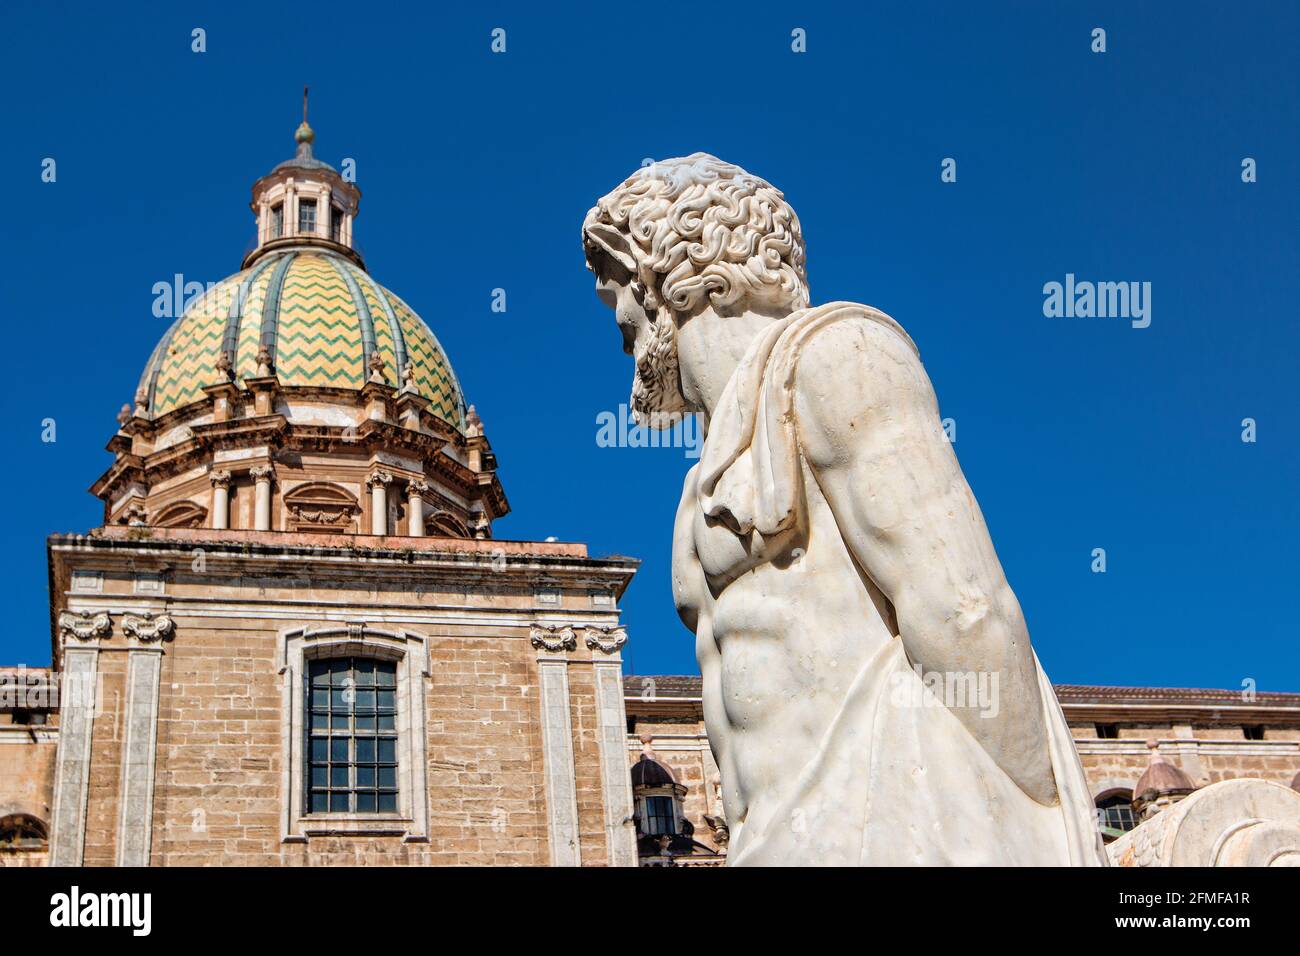 Italy, Sicily, Palermo, downtown, Piazza Pretoria, Renaissance fountain Stock Photo